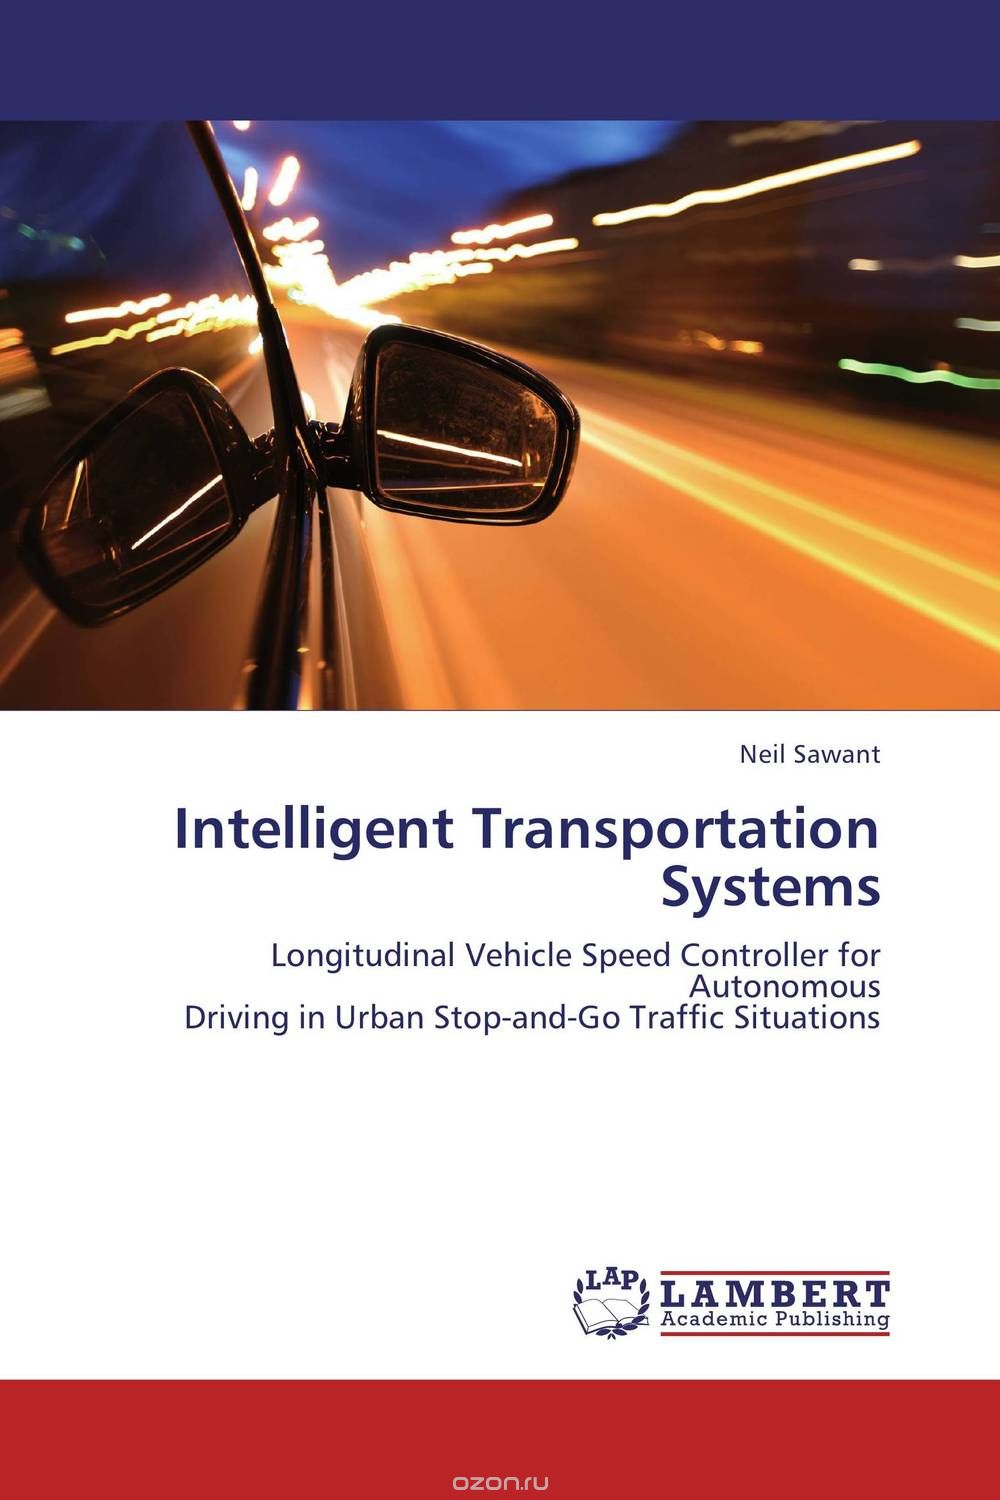 Скачать книгу "Intelligent Transportation Systems"